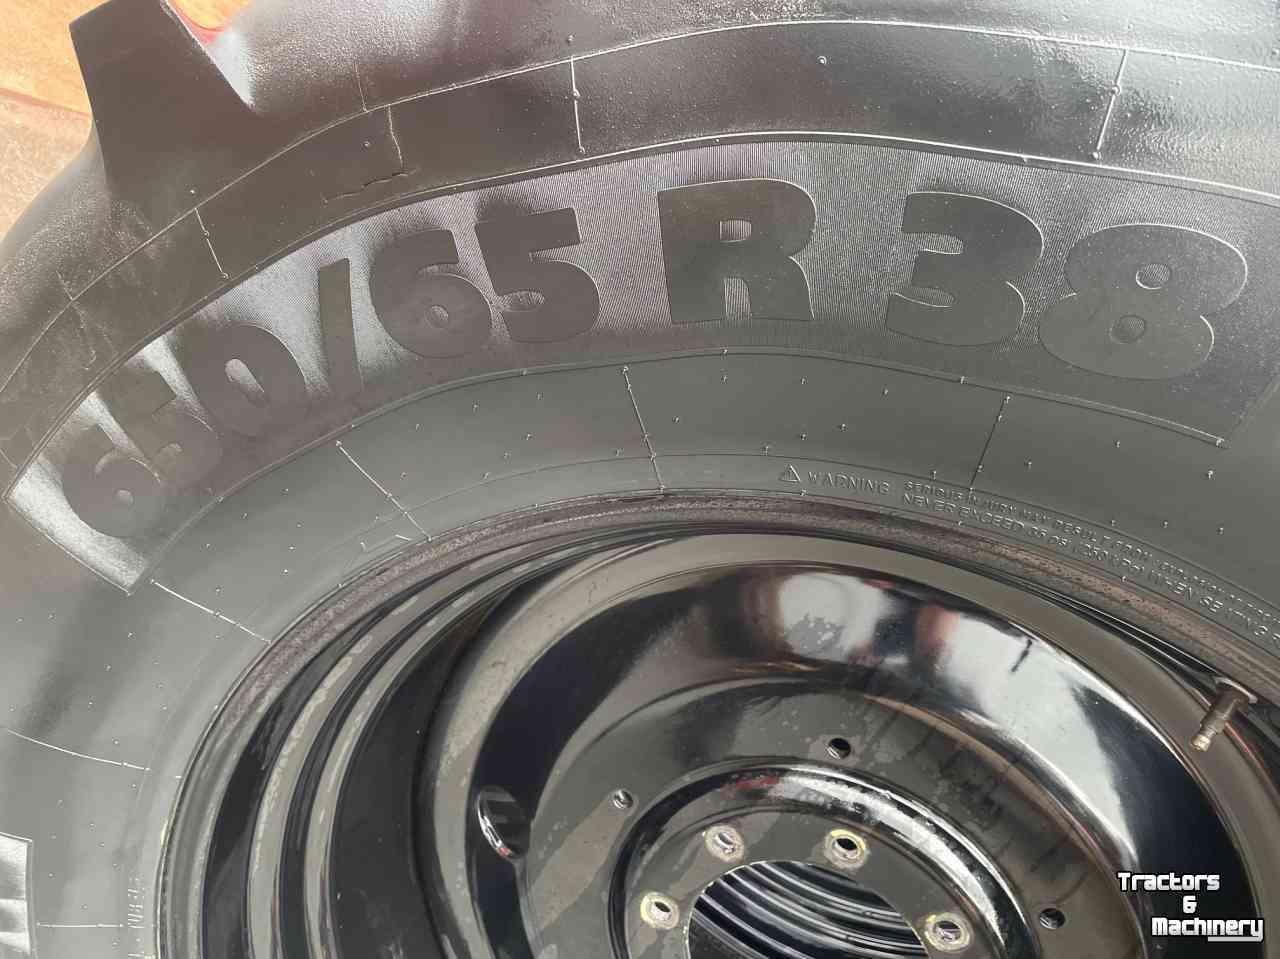 Räder, Reifen, Felgen & Distanzringe Michelin 650x65R38 Multibib